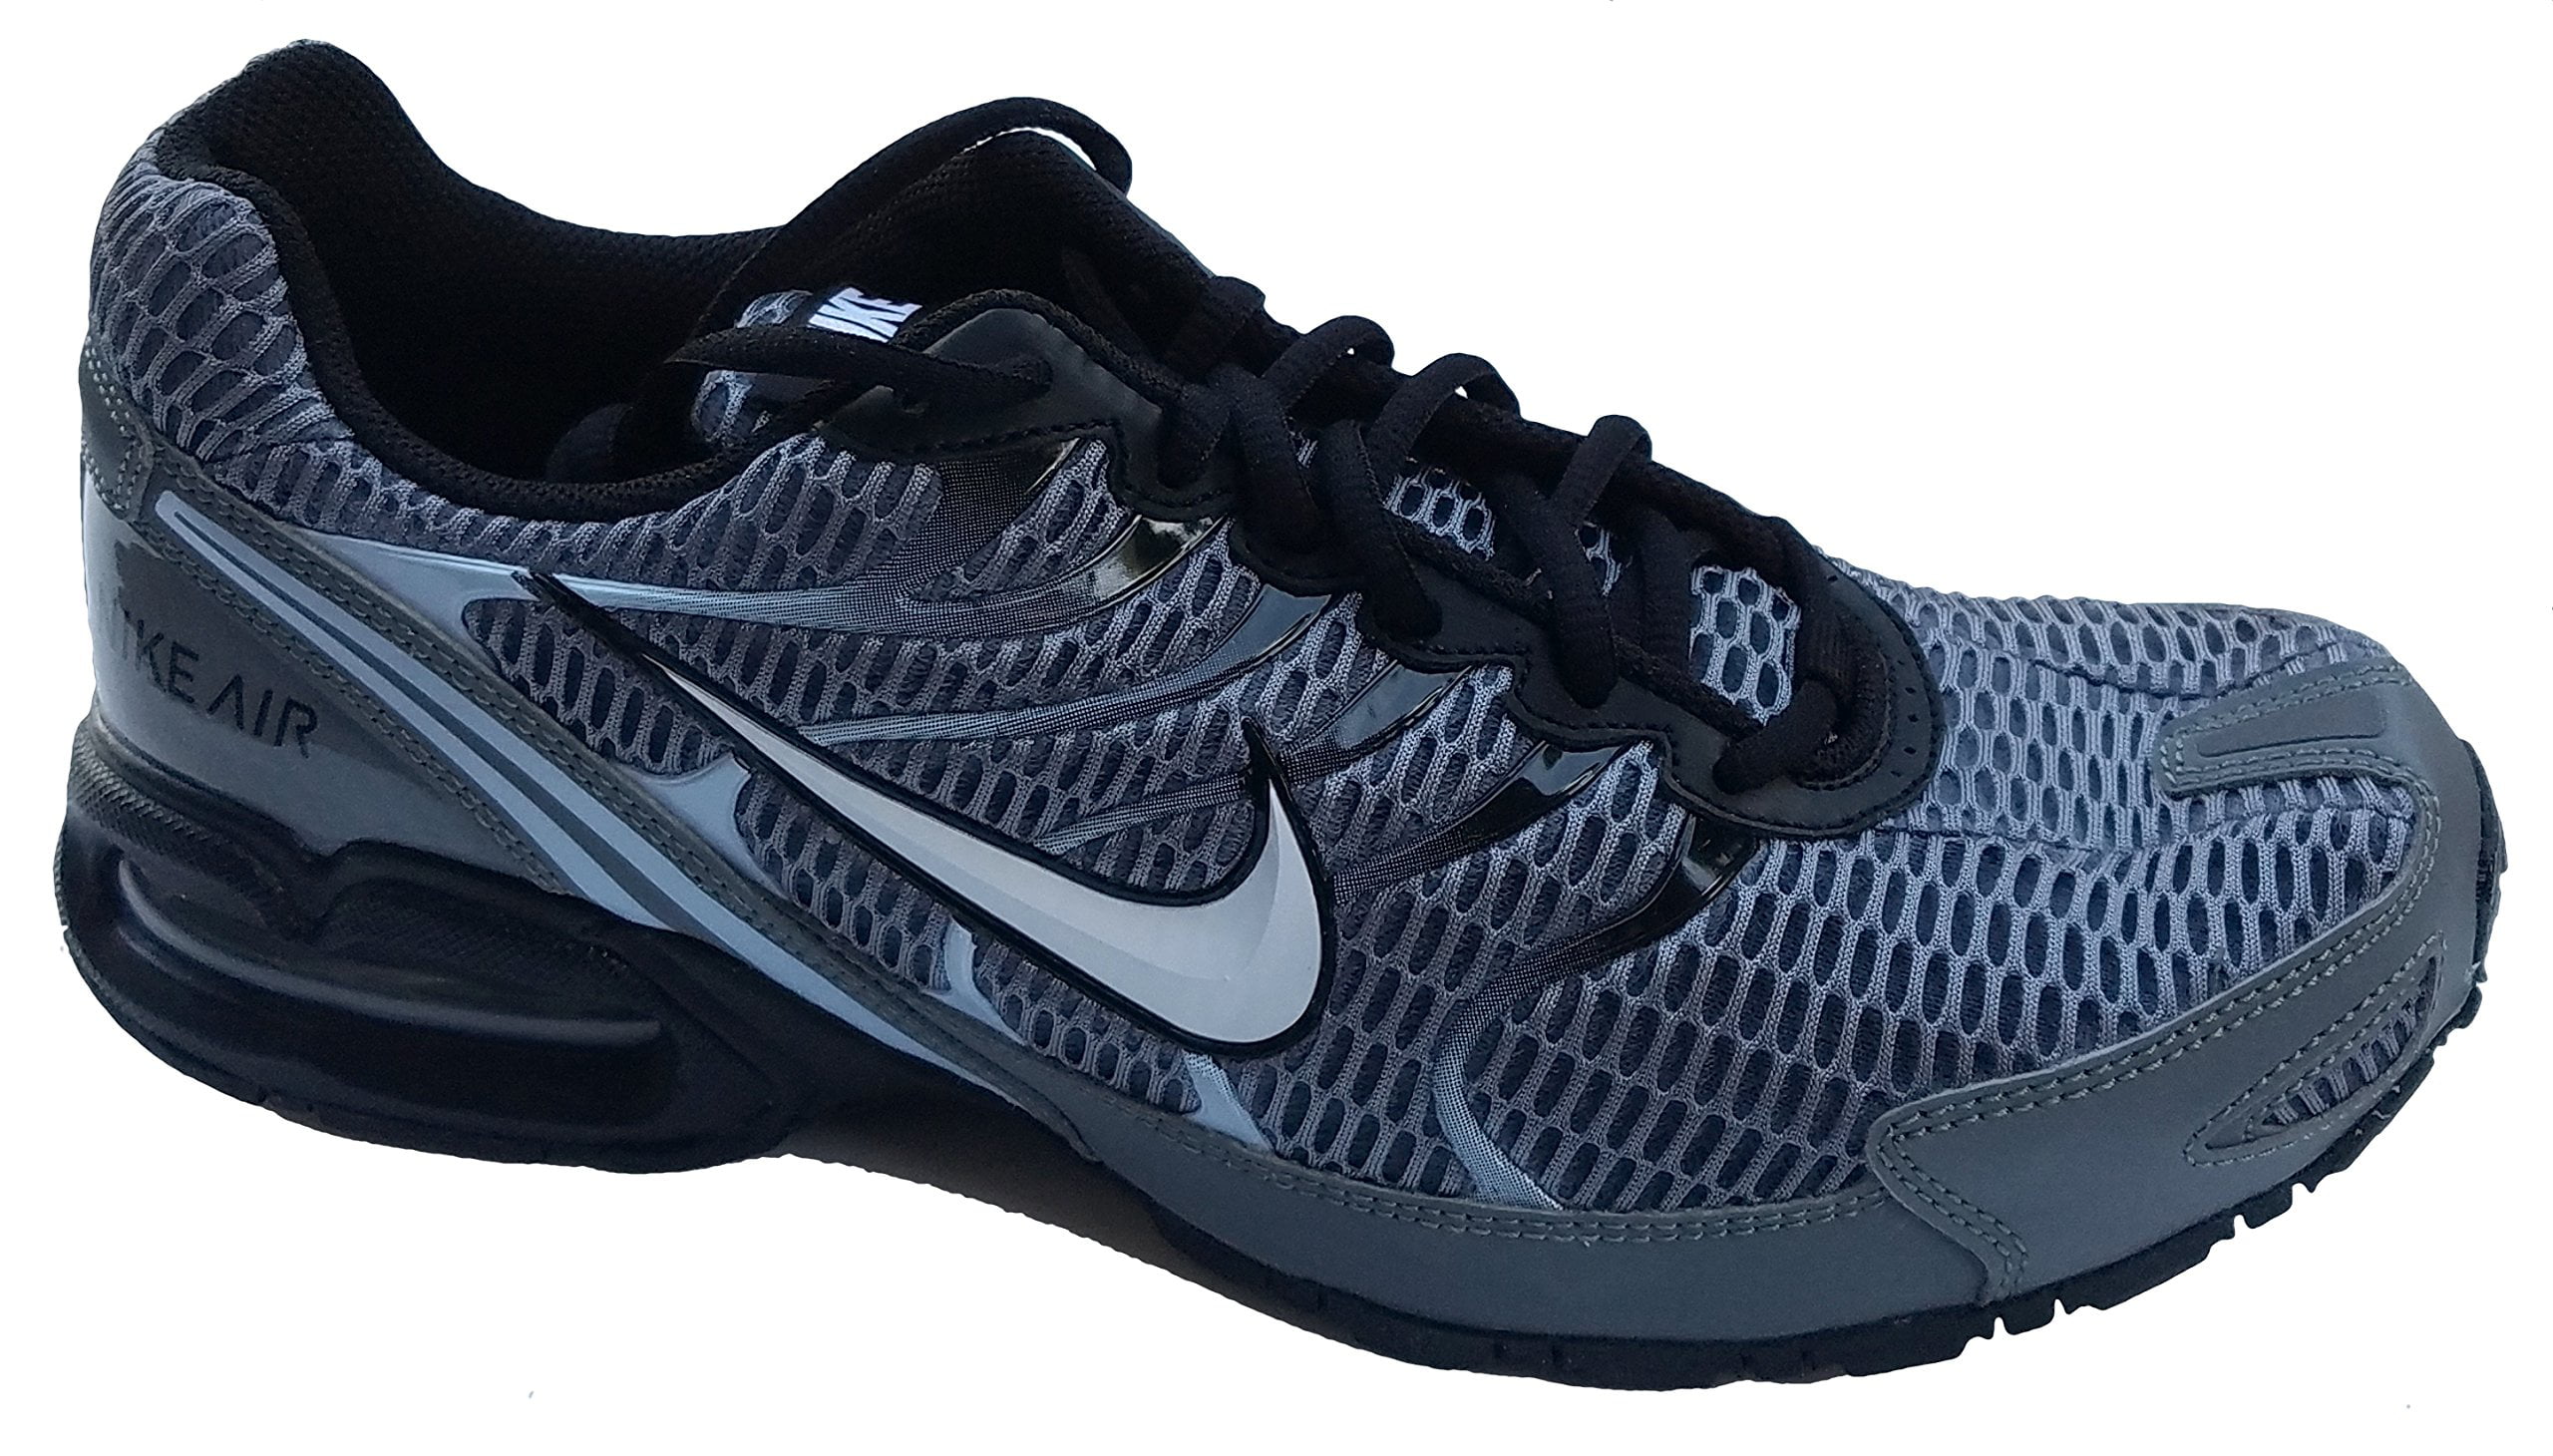 عكر فارسي Men's Nike Air Max Torch 4 Running Shoe Cool Grey/White/Black/Pure Platinum  Size 11.5 M US عكر فارسي